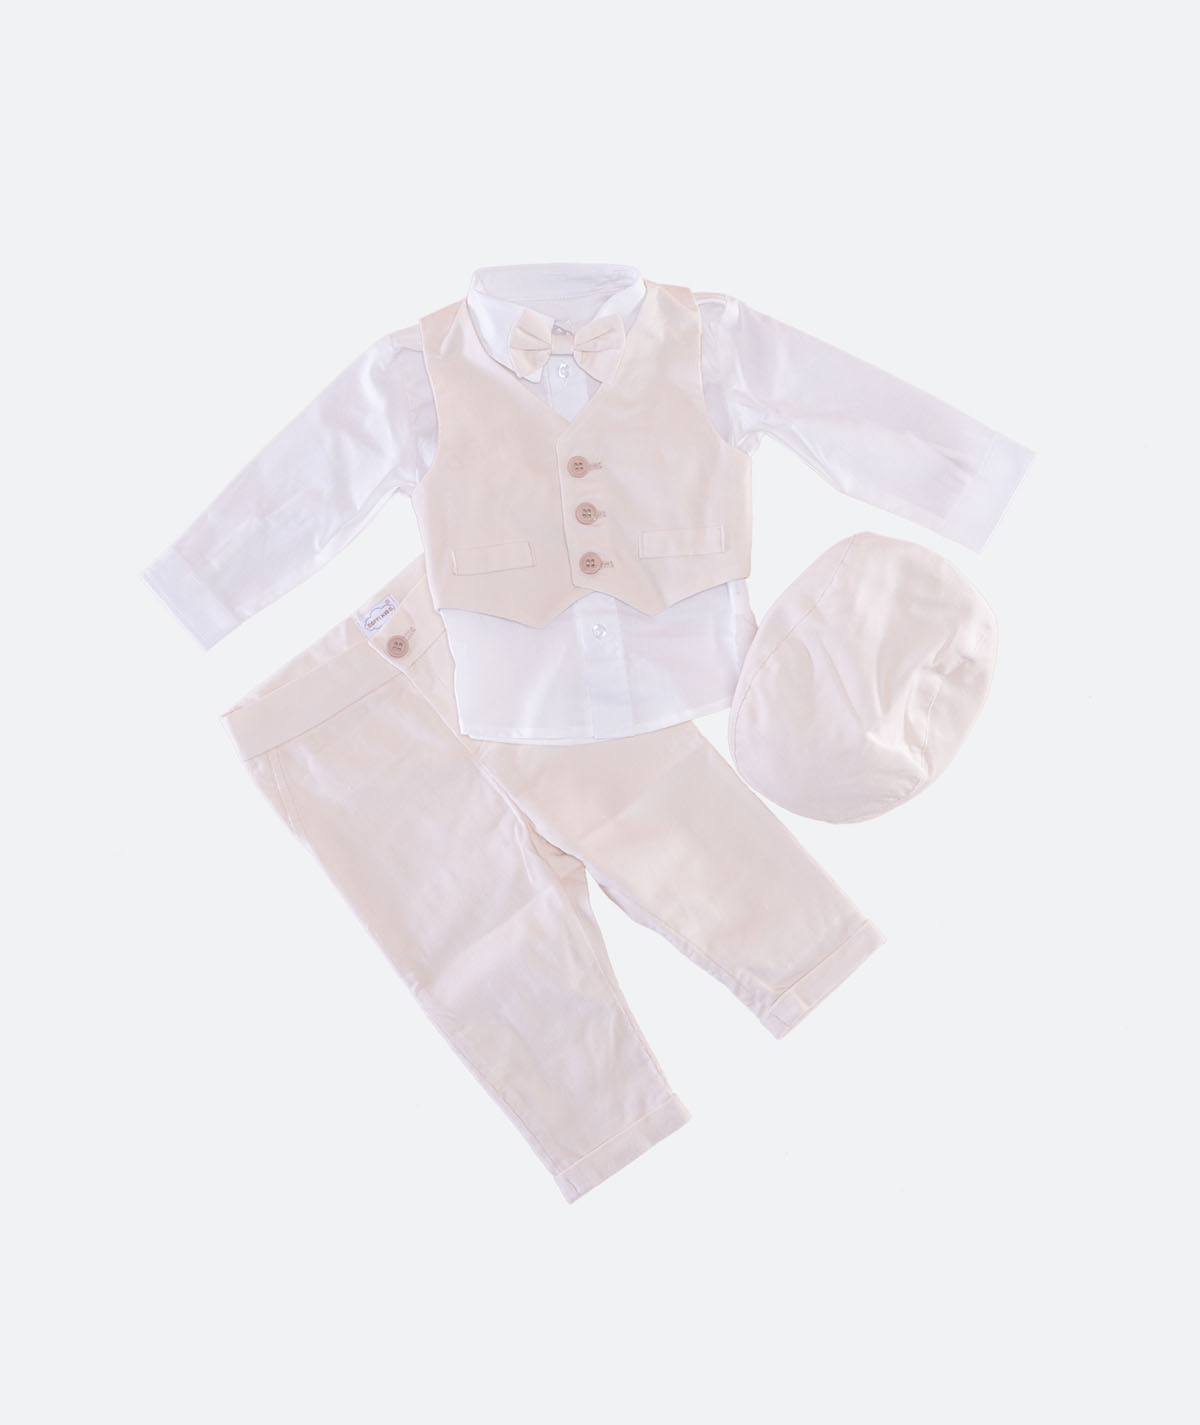 Semina Baby Anzug Taufanzug für Jungen 3-teilig Sakko Hose Weste Creme weiß Celebration 